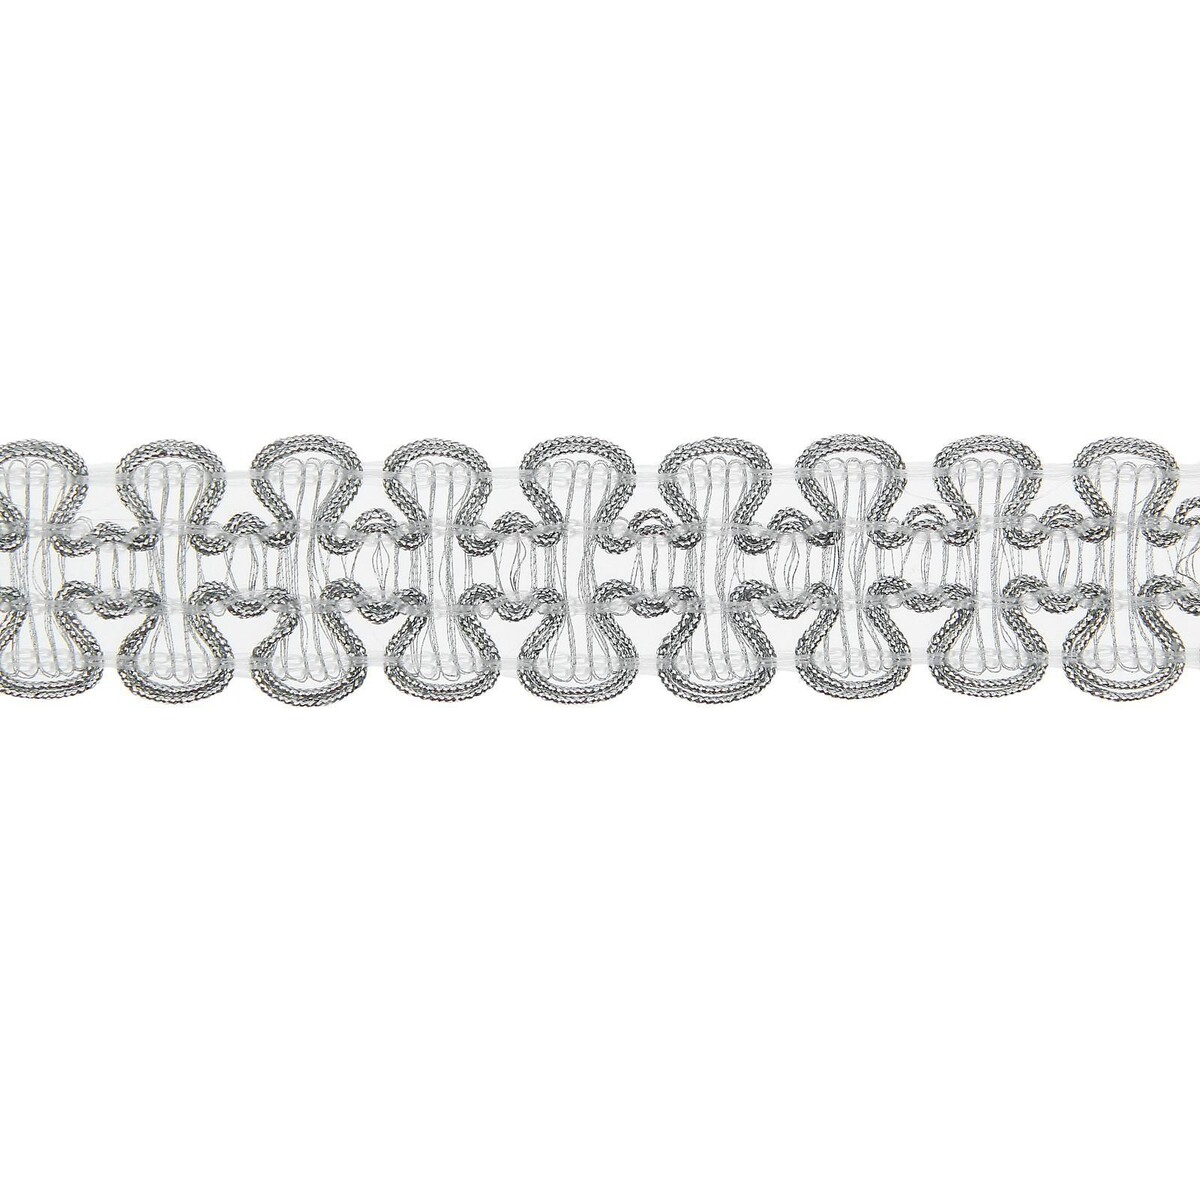 Тесьма плетеная серебряная в рулоне 20 метров защелка врезная зенит 3щ2 бп 00011340 серебряная